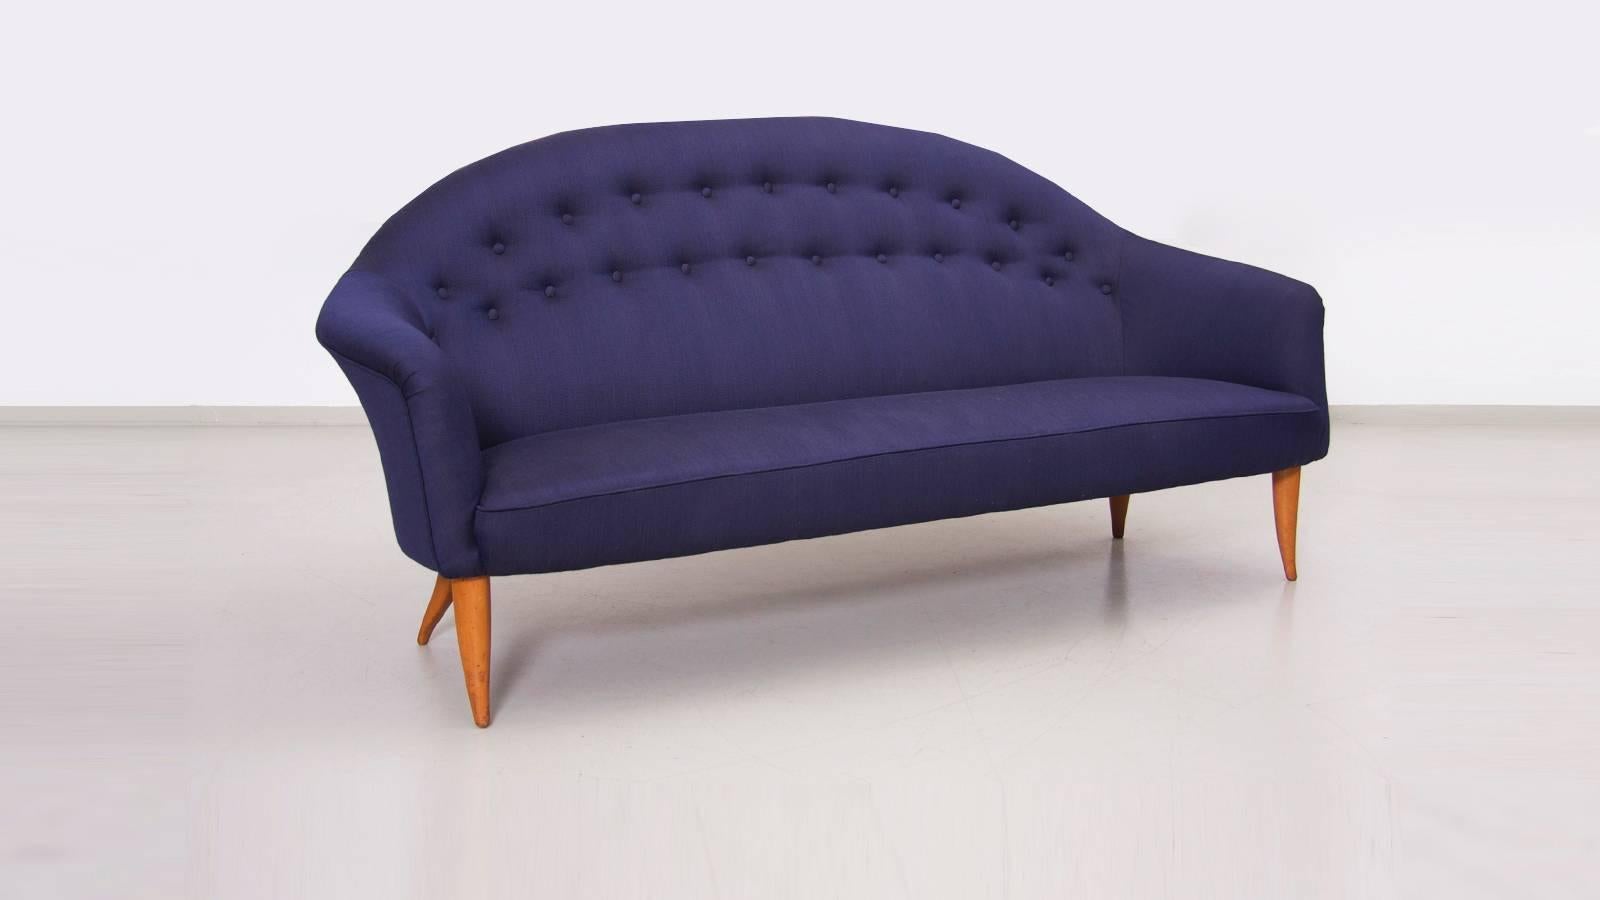 Paradise sofa by Kerstin Hörlin-Holmquist for Nordiska Kompaniets Verkstader in new Fanny Aronsen Balder Fabric.